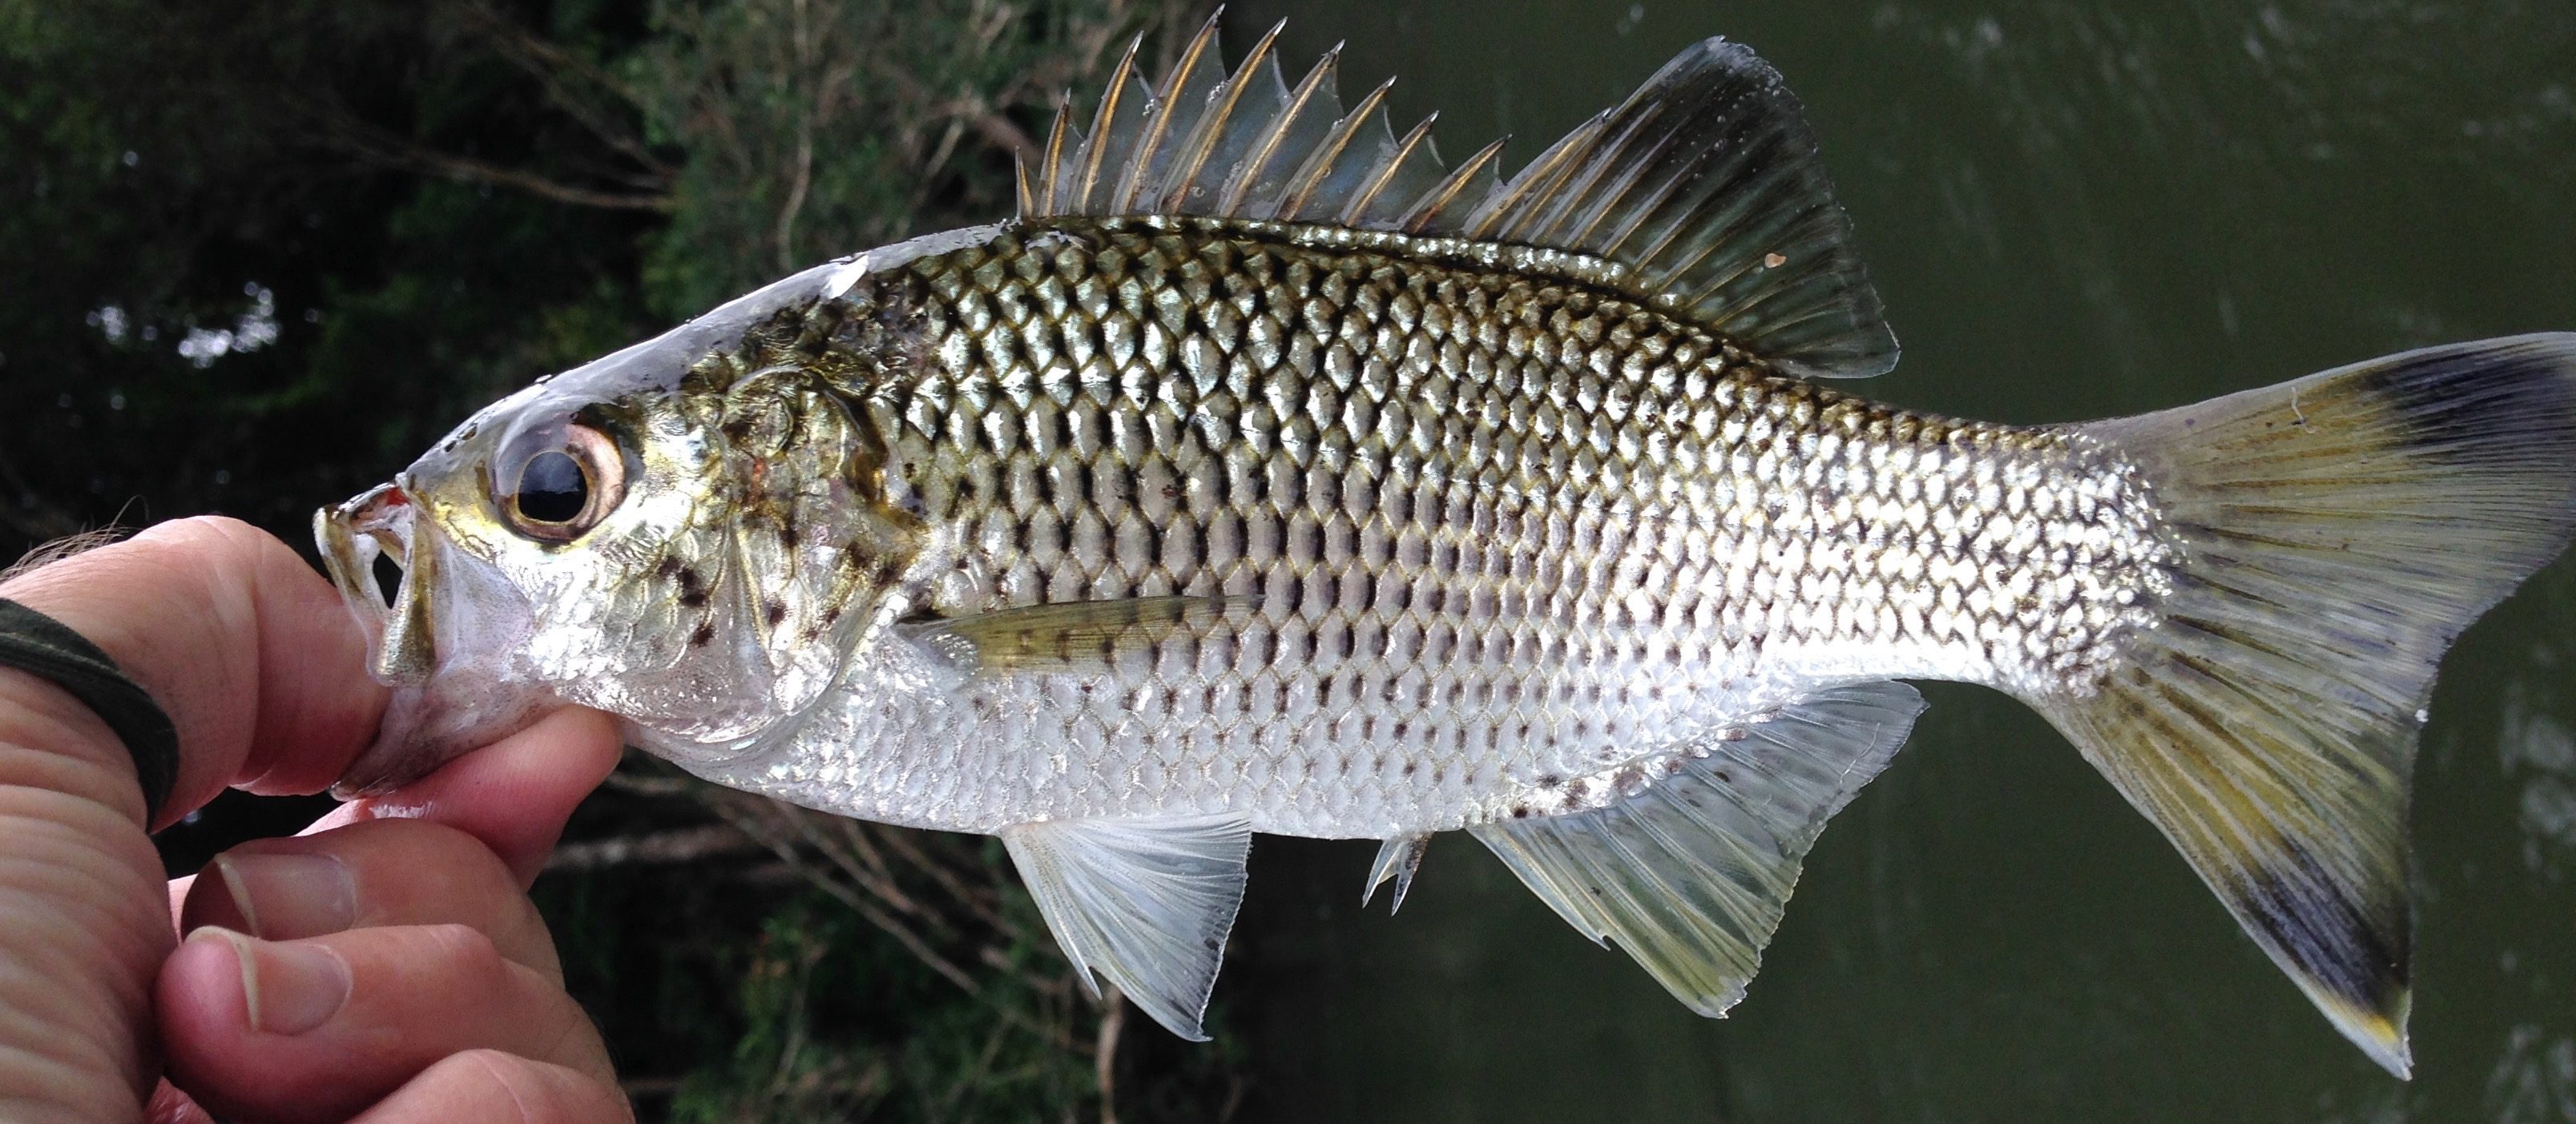 Queensland Fish Species Chart